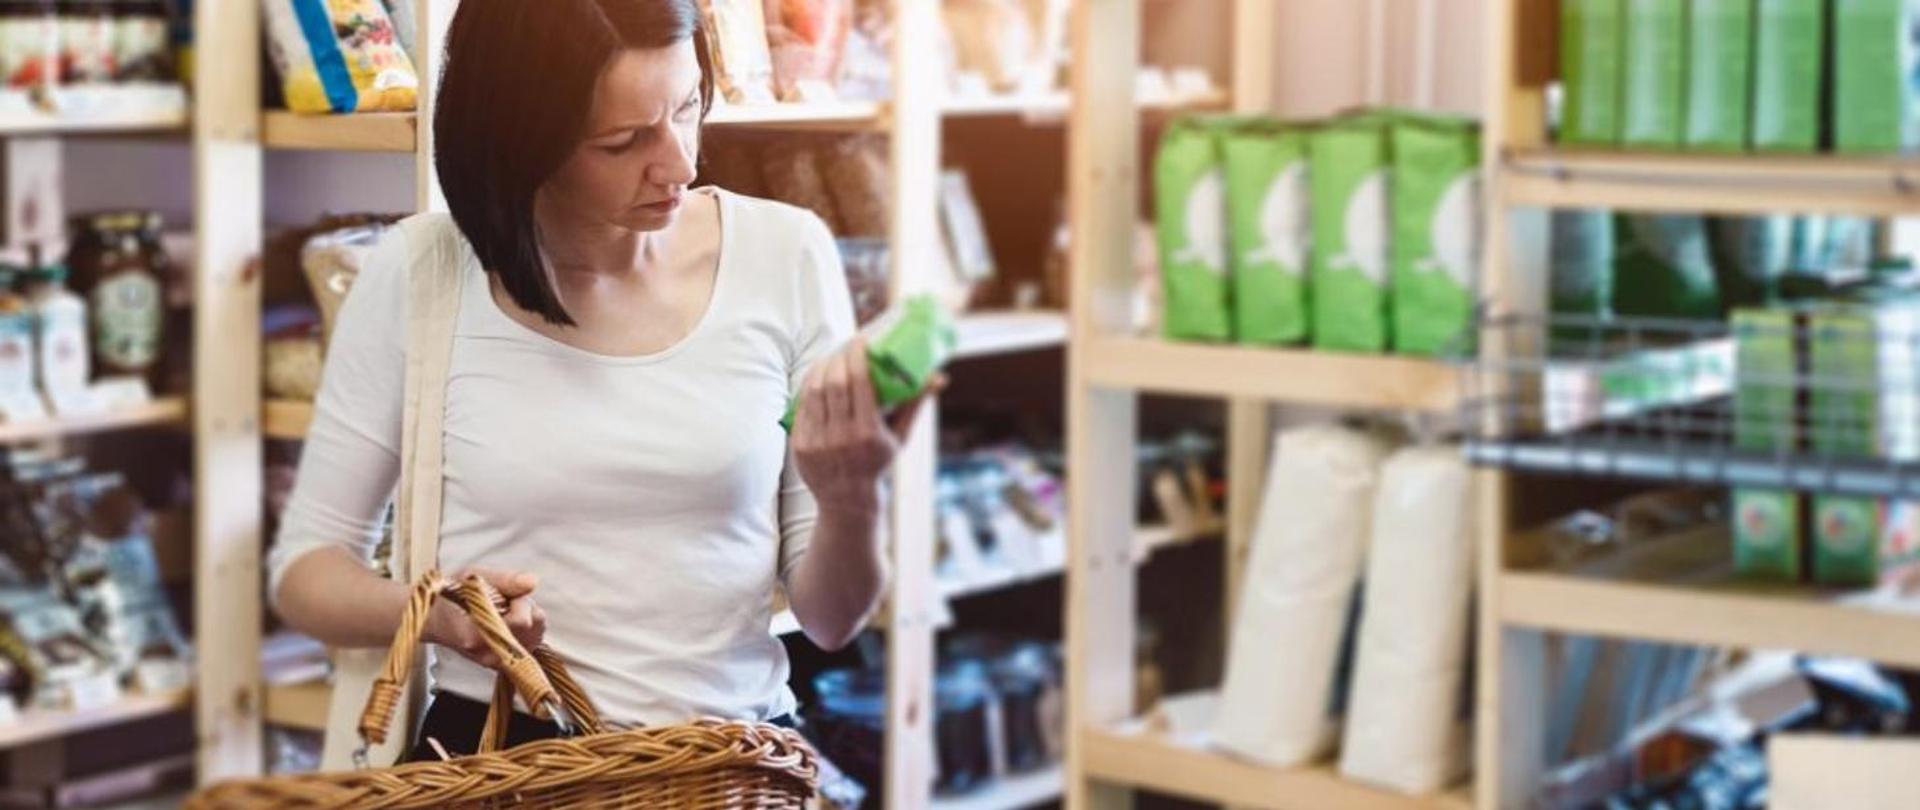 zdjęcie kobiety robiącej zakupy w sklepie spożywczym na tle regałów